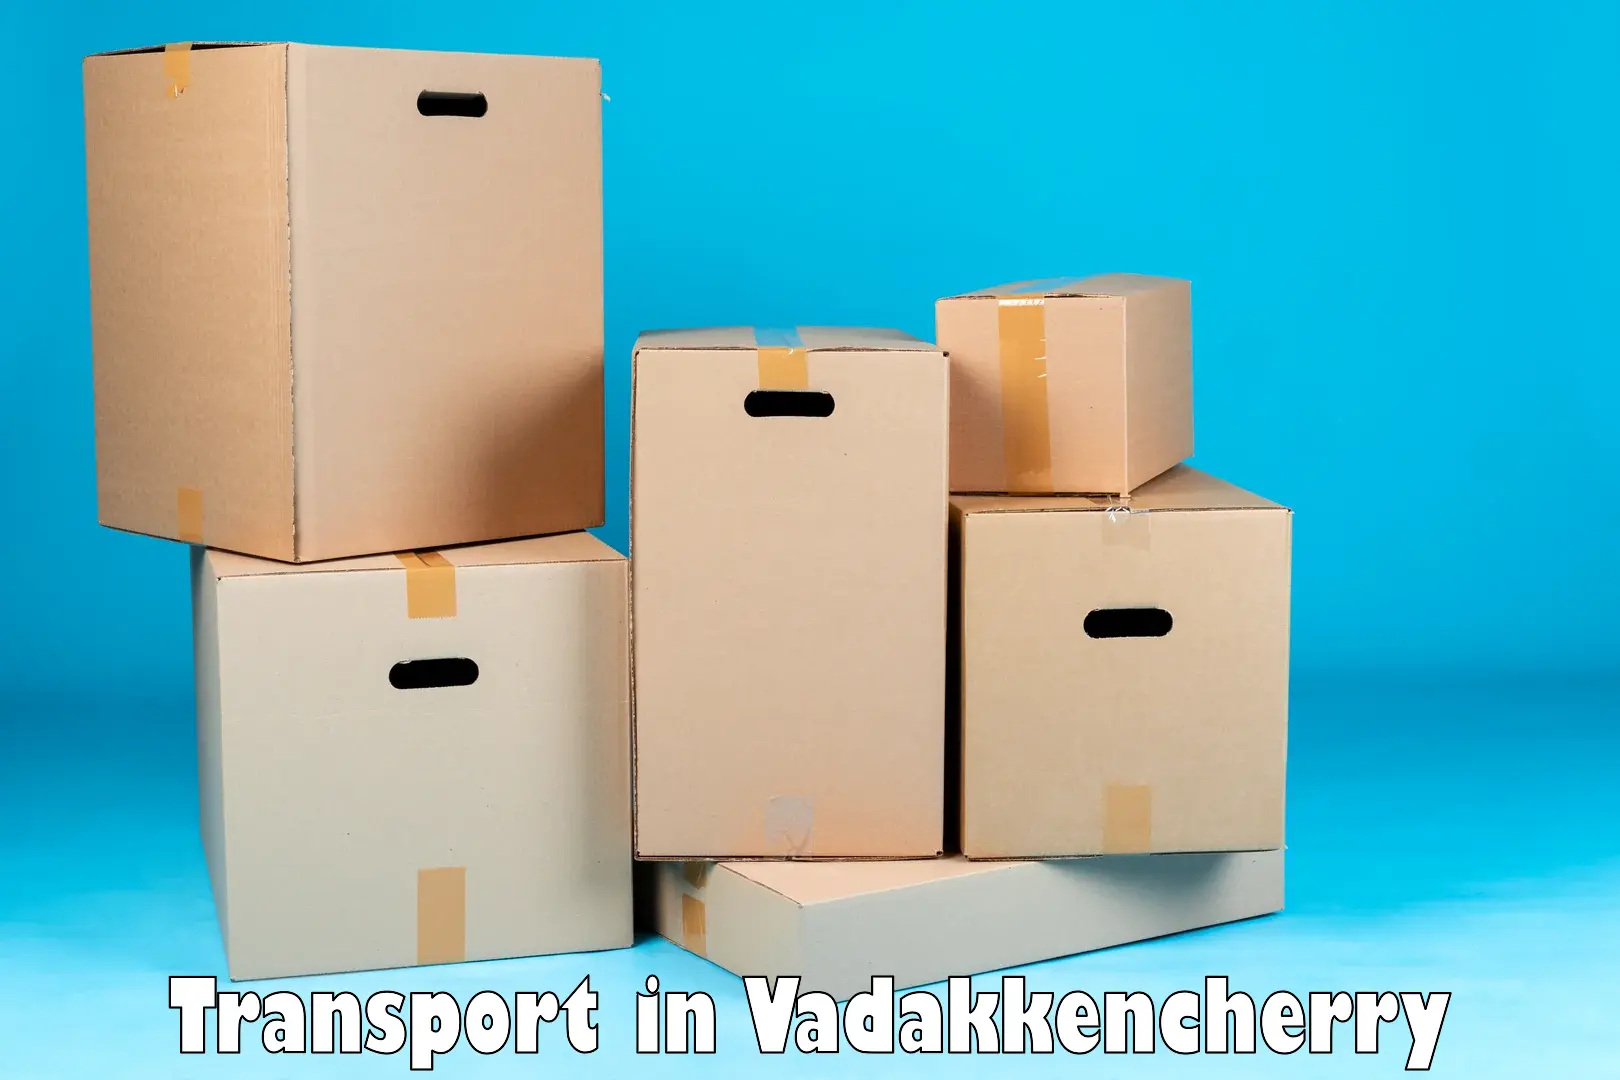 Interstate goods transport in Vadakkencherry